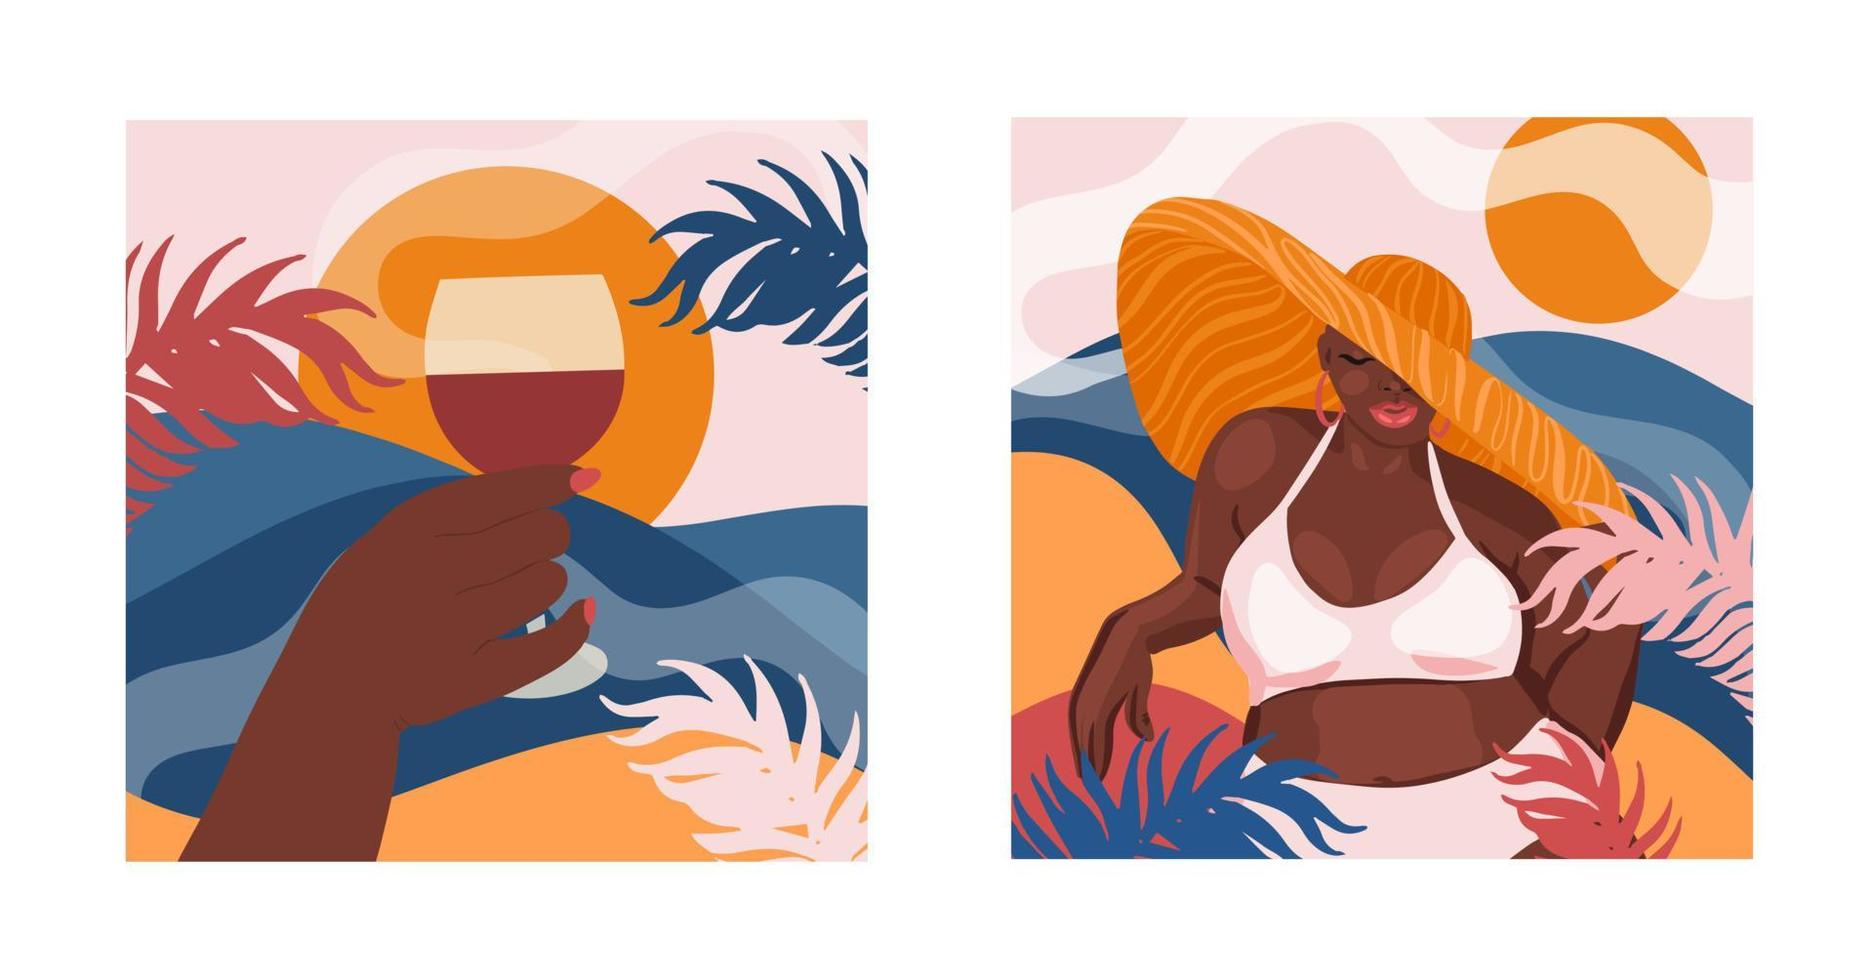 hermosa contento de piel oscura muchacha. vacaciones en el playa, relajación concepto vector